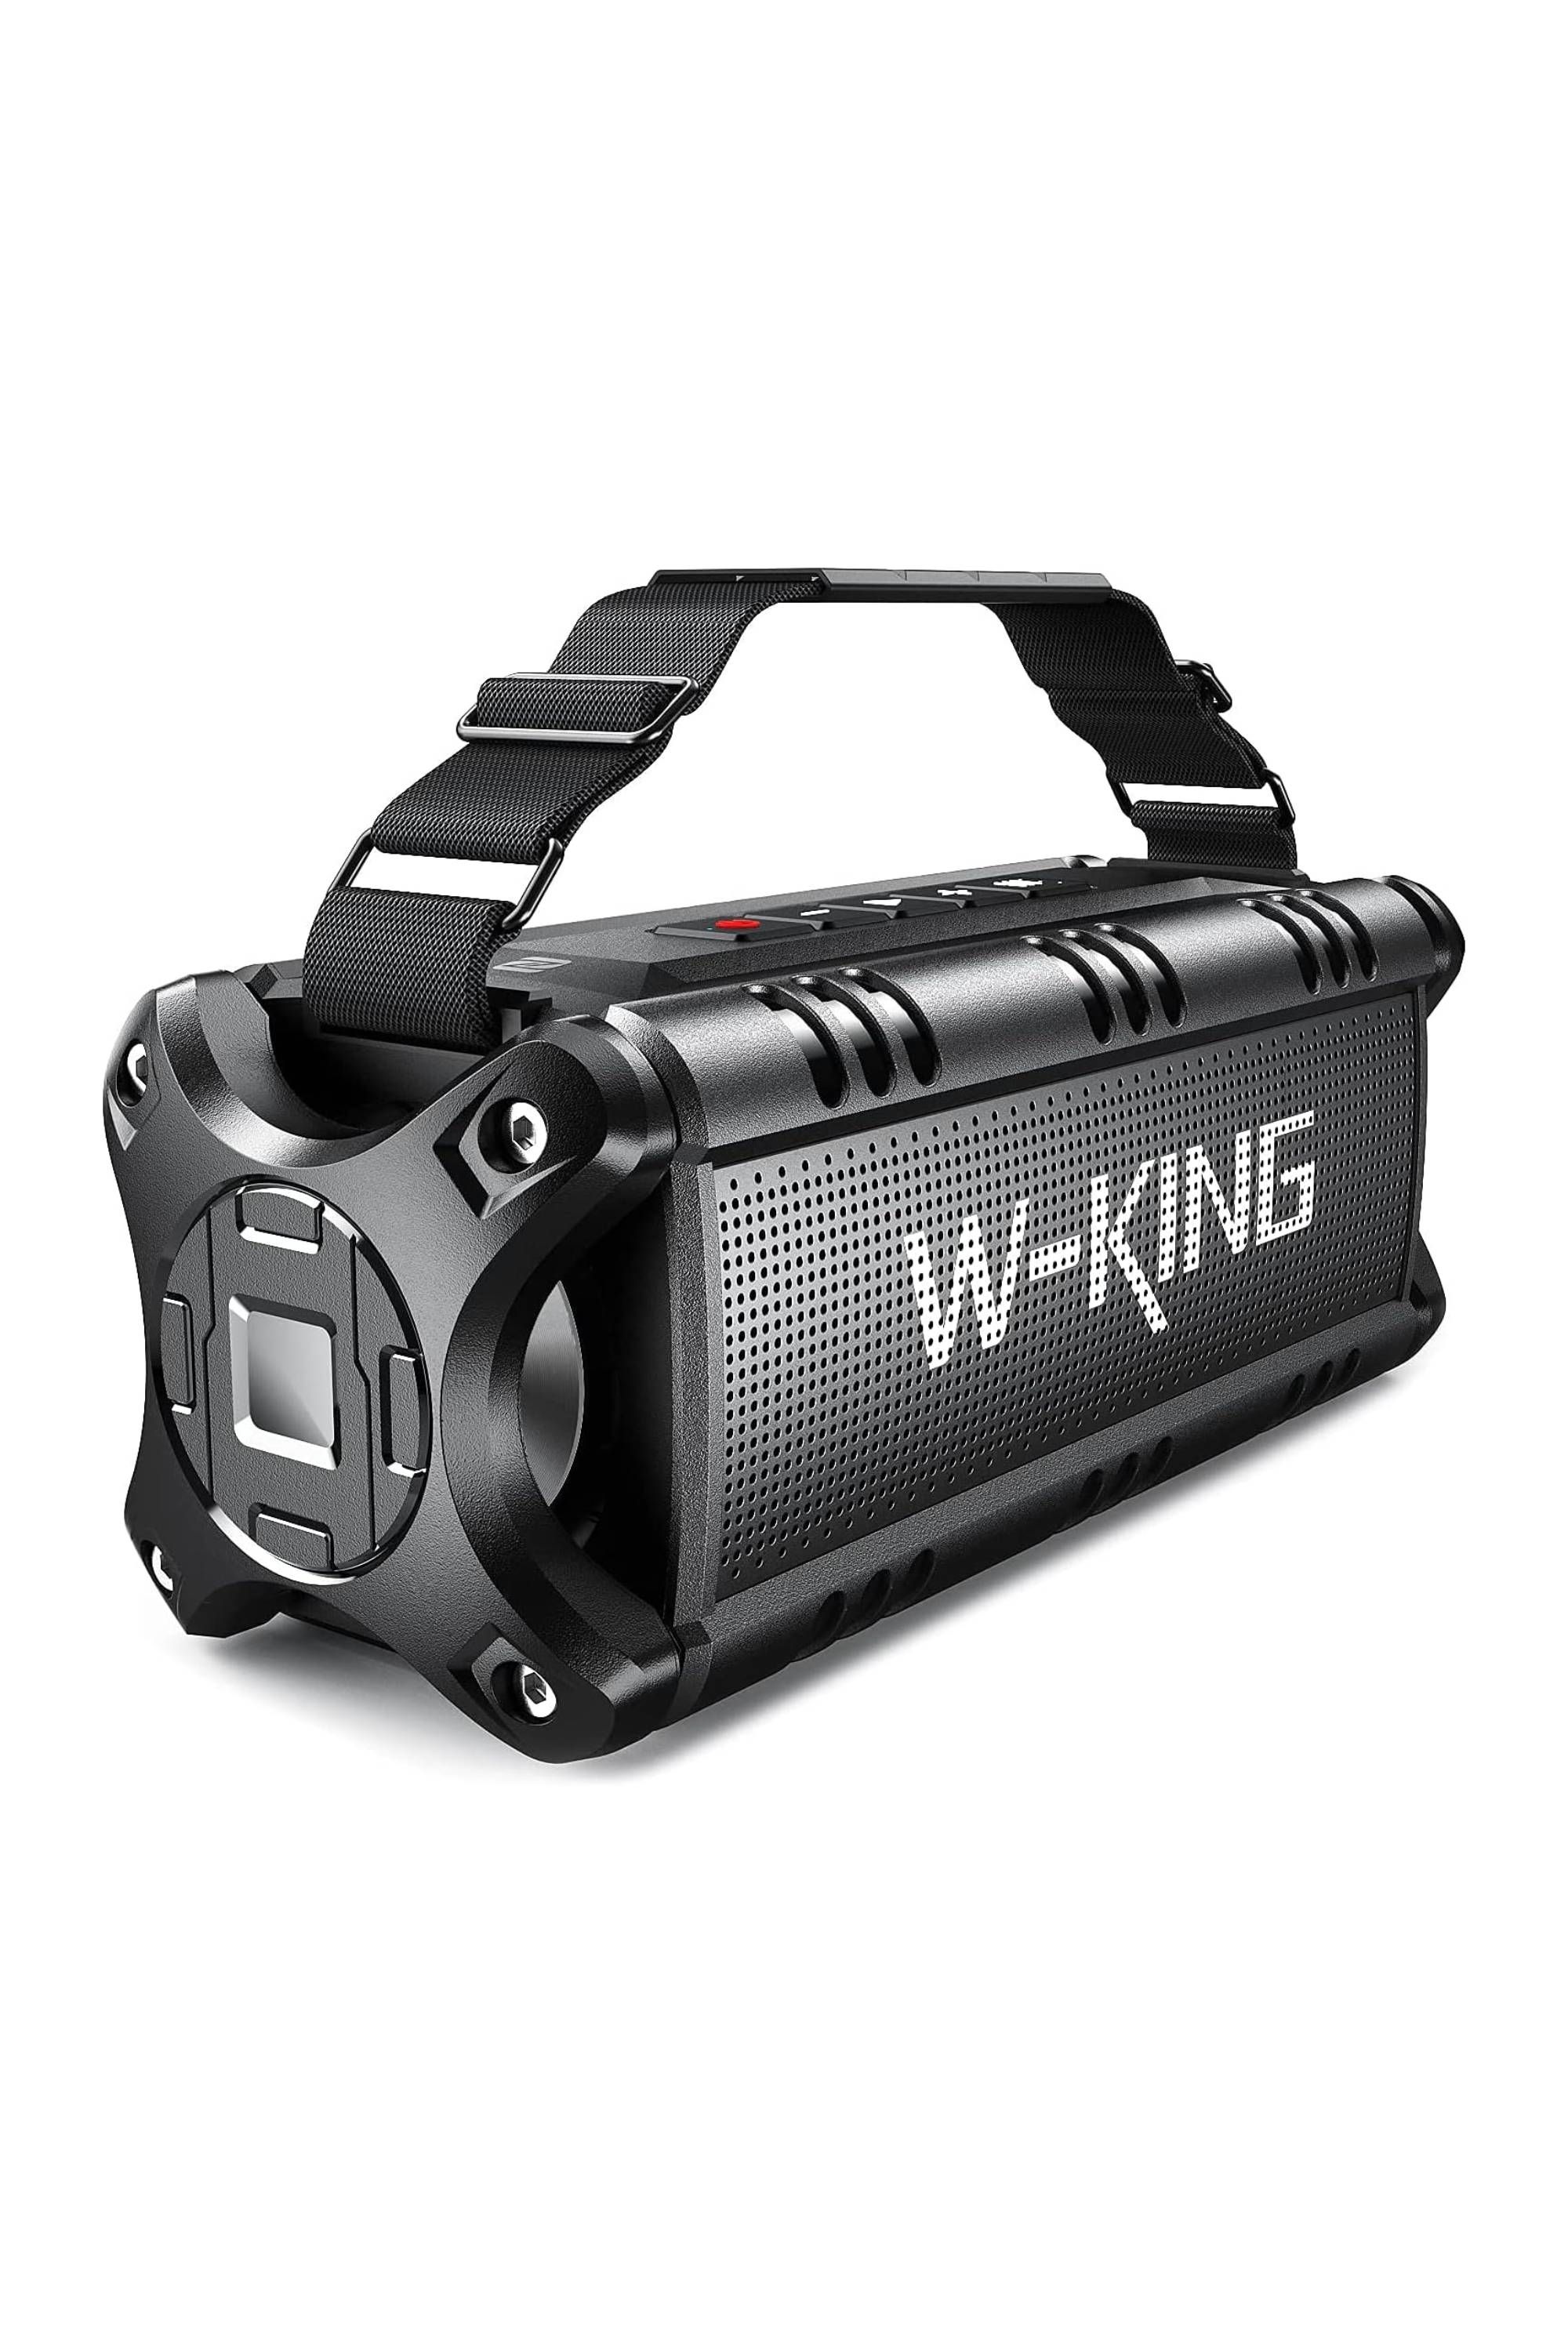 W-KING 50W IPX6 Waterproof Bluetooth Speaker